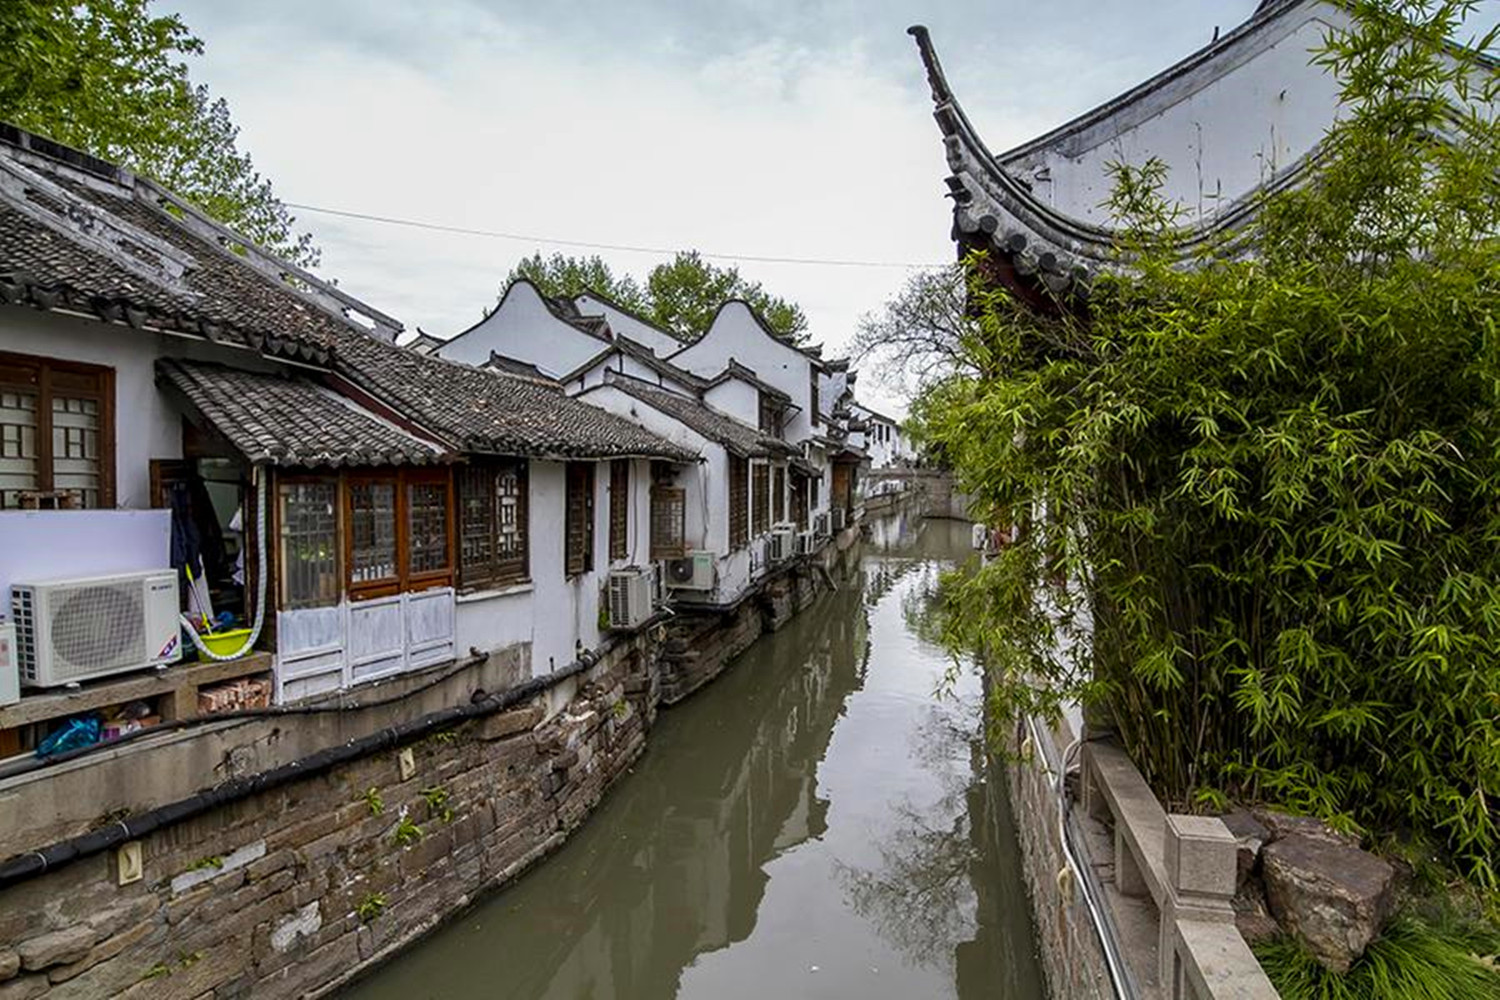 上海嘉定区有一条古镇老街以明清建筑为主人文浩荡底蕴深厚